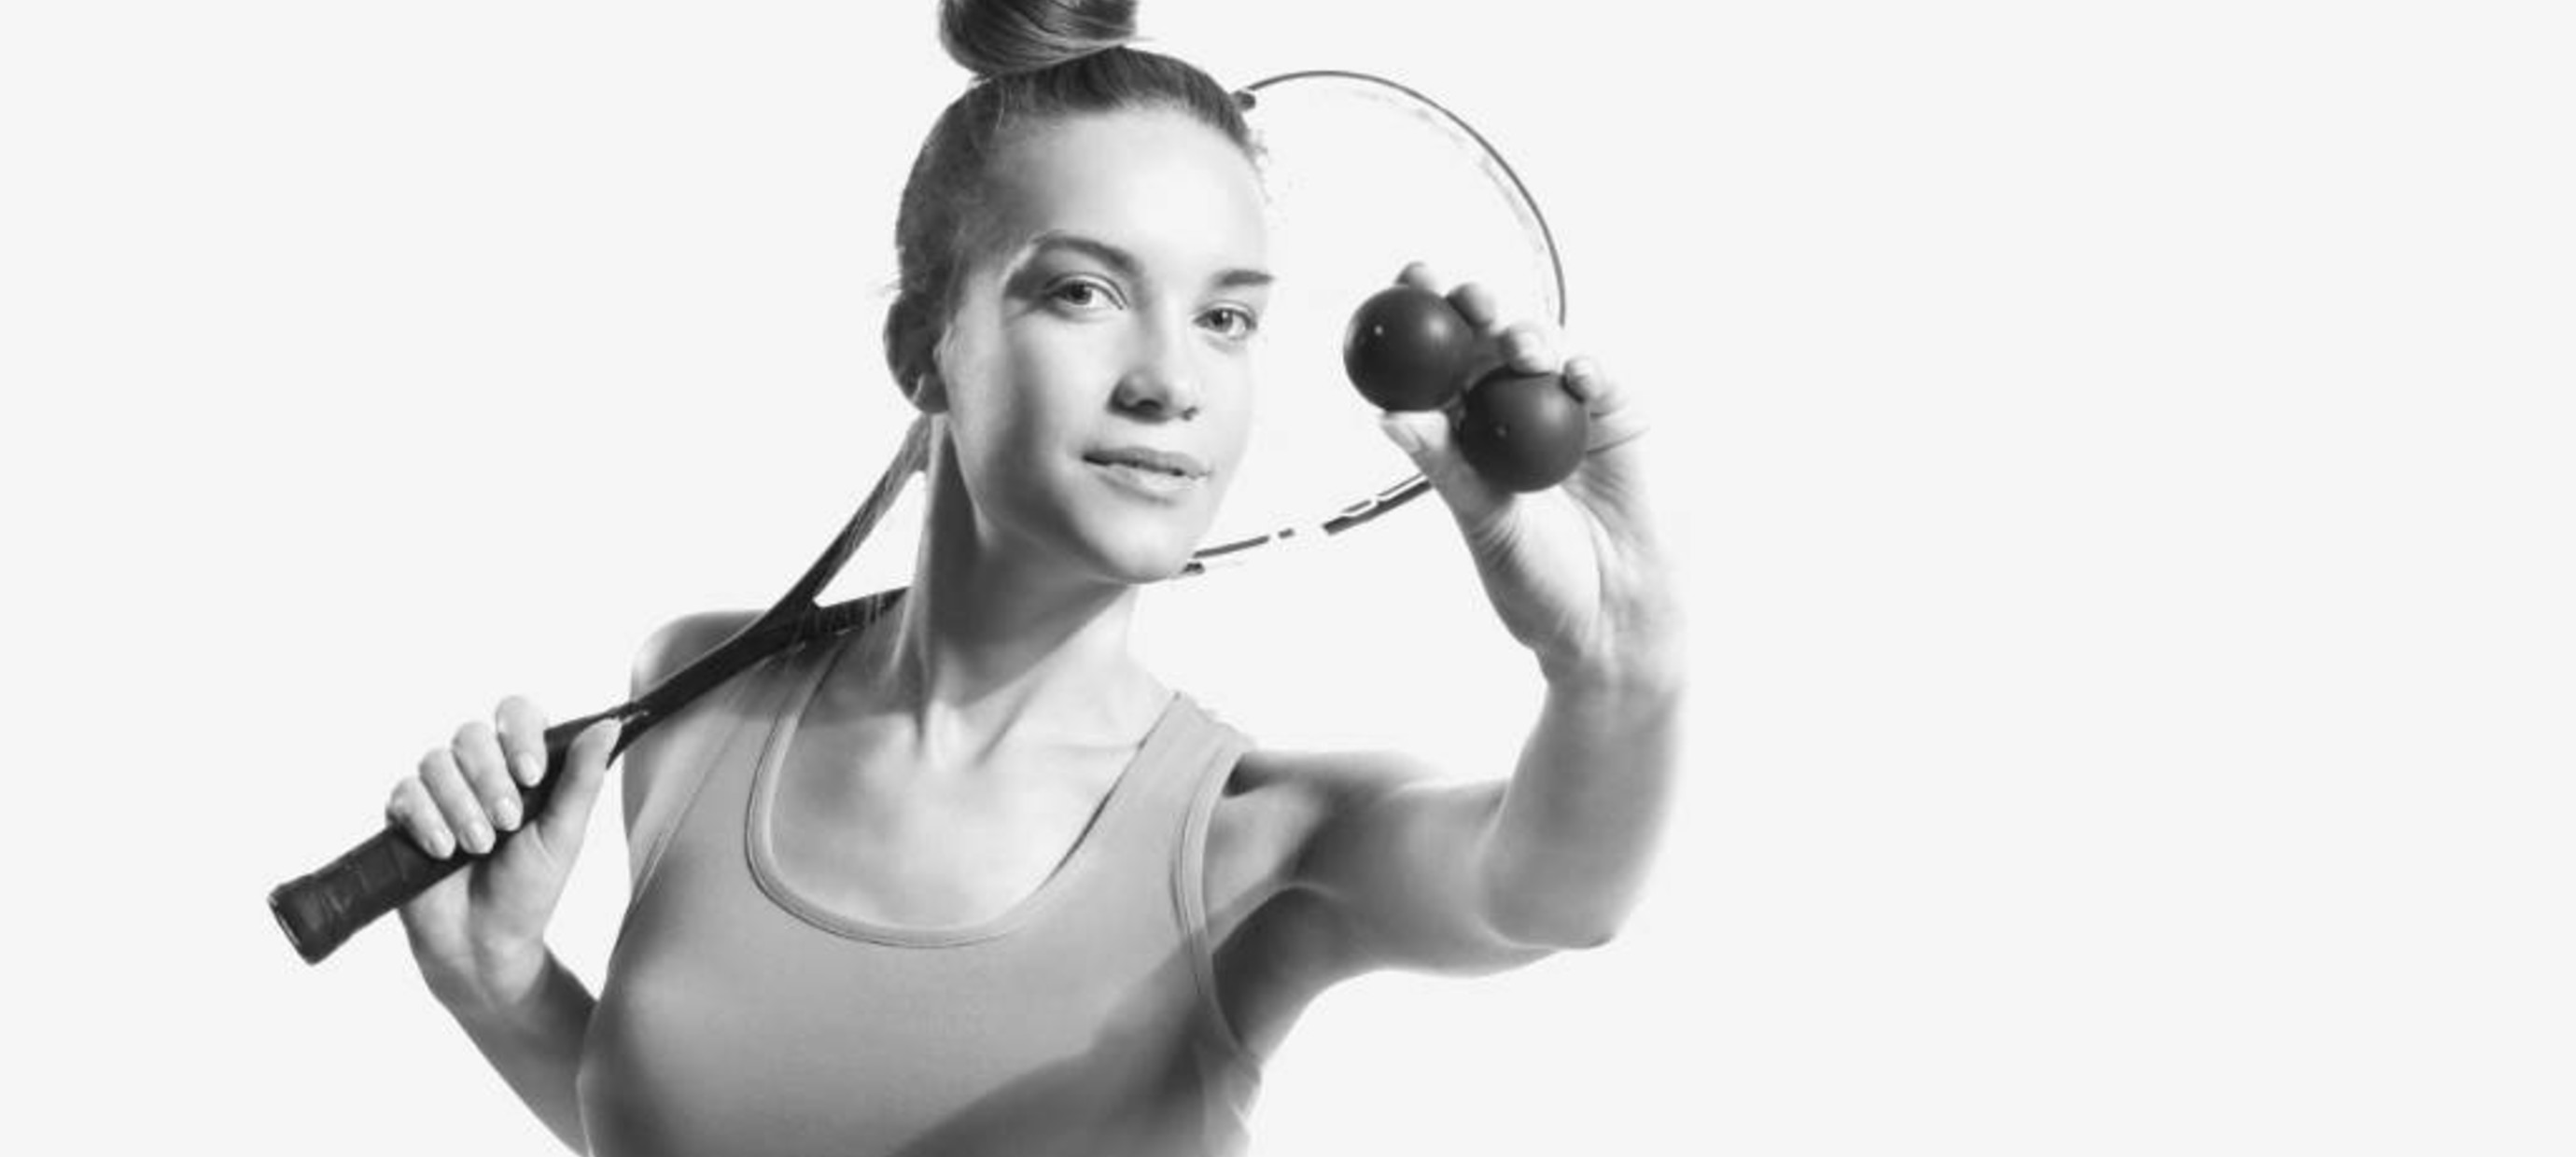 Squash de beste sport om gezond te blijven